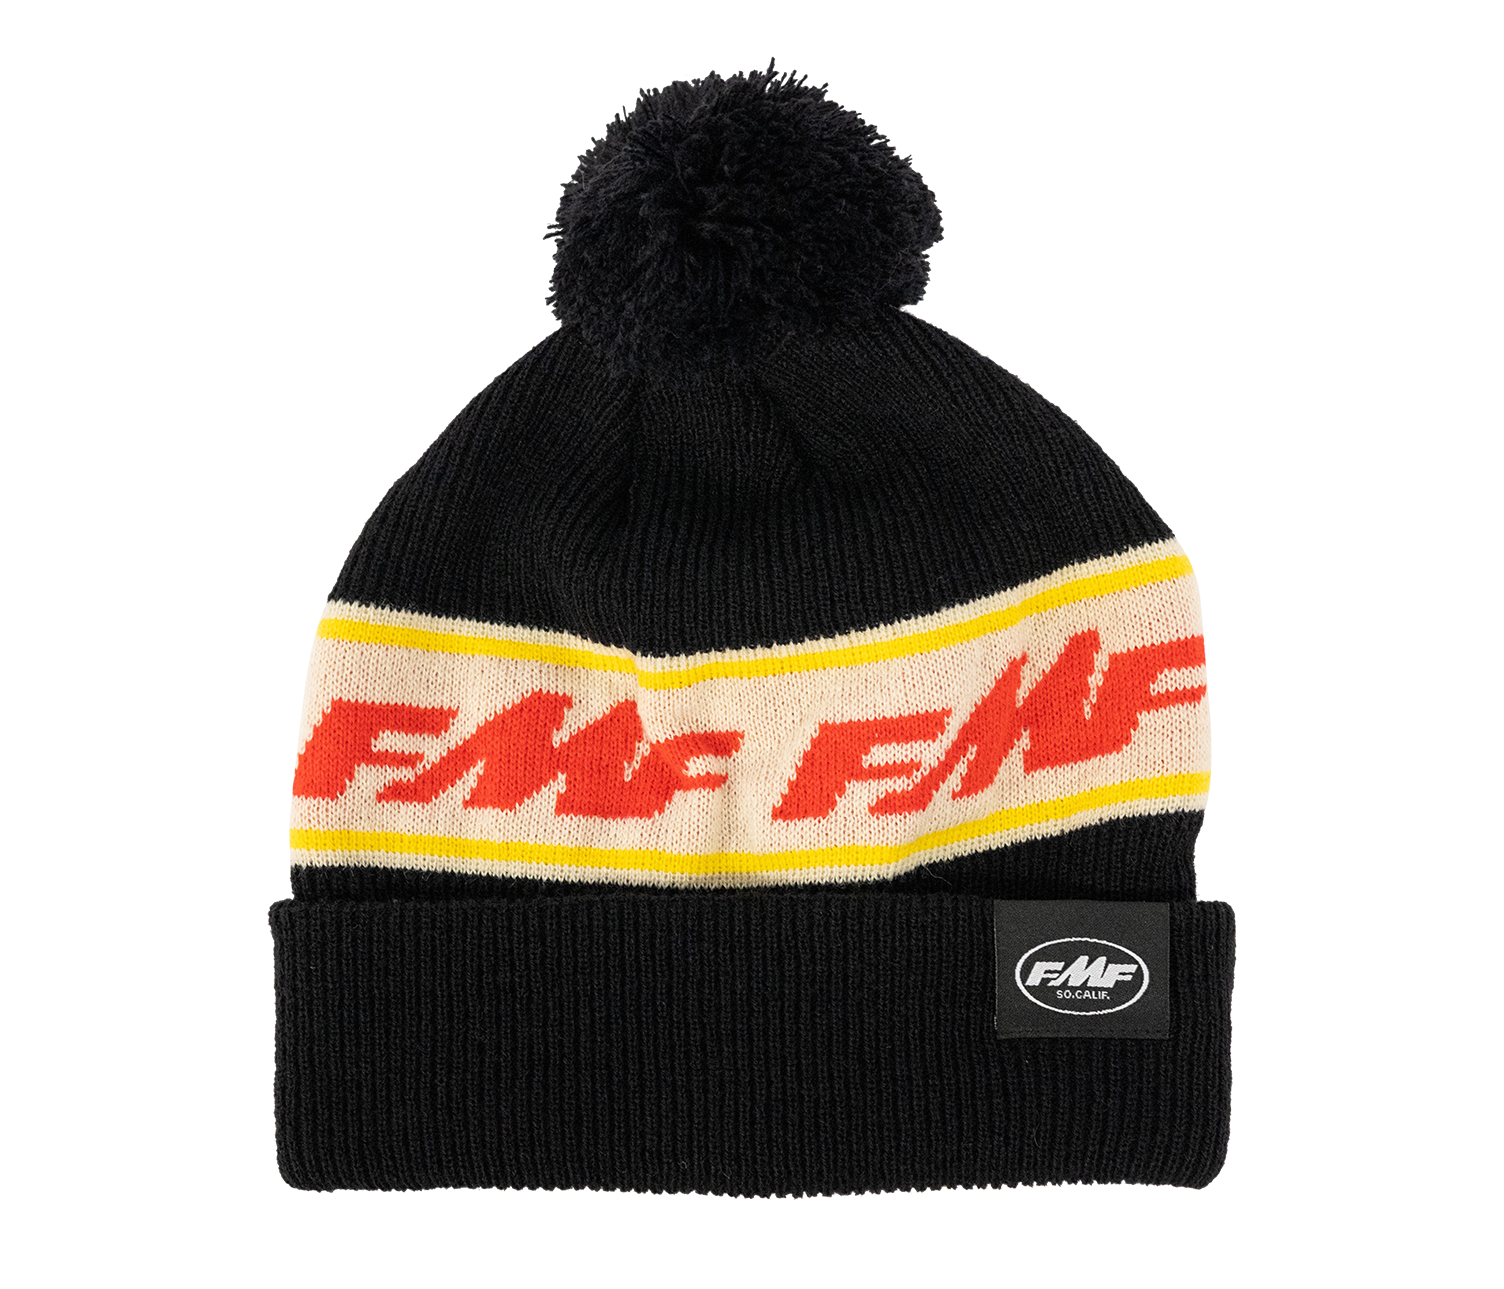 Fmf Racing-Bonnet réglable pour motocross S, bonnets, casquette, drôle, hip  hop - AliExpress